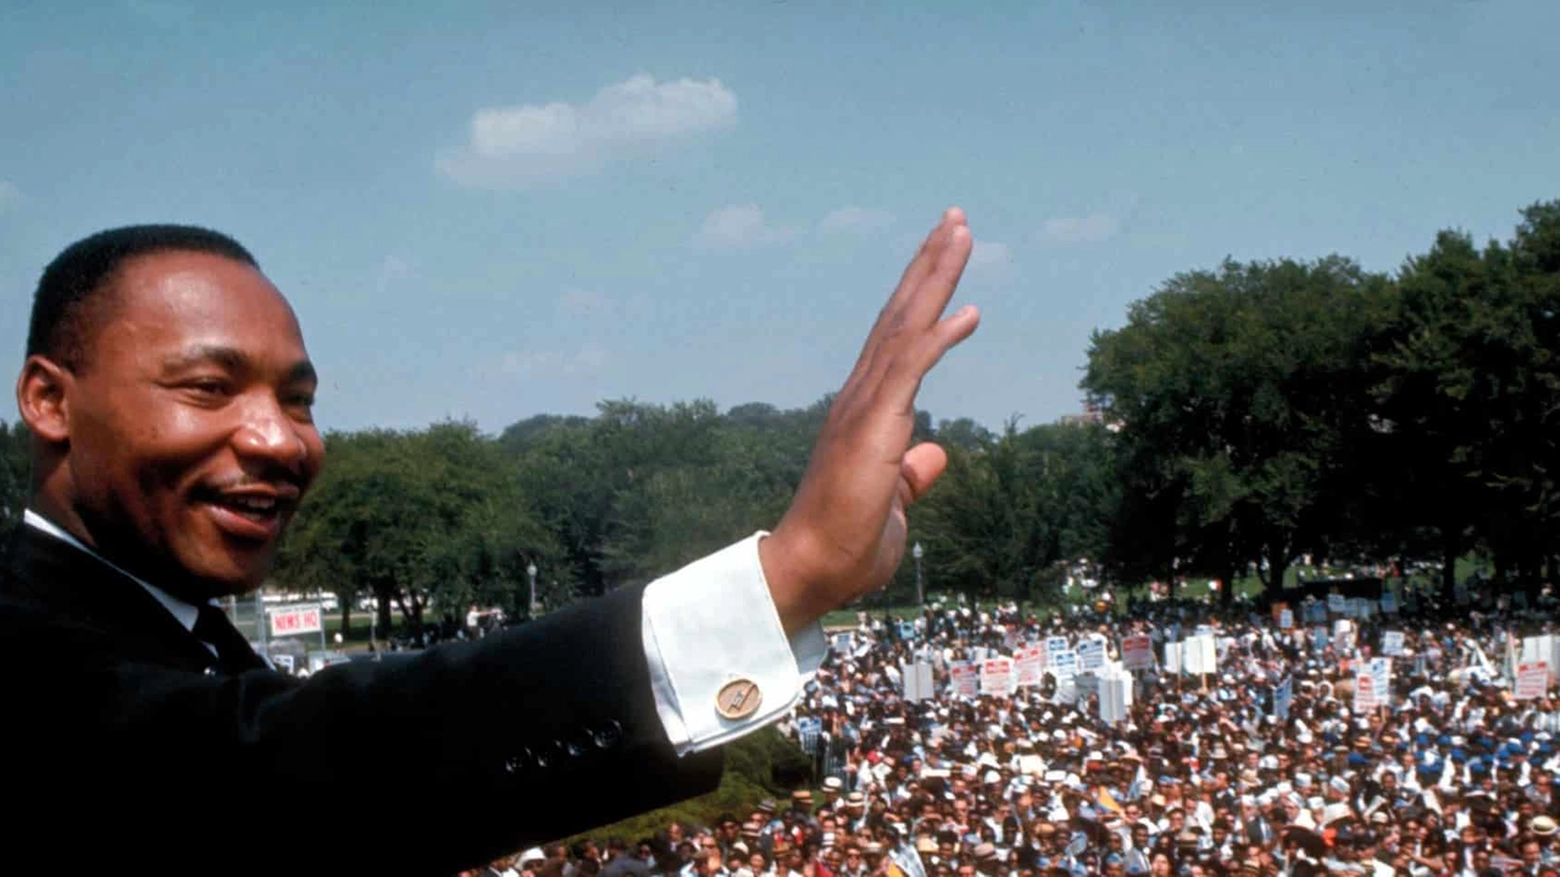 28 agosto 1963: Martin Luther King pronuncia il suo discorso “I have a dream“